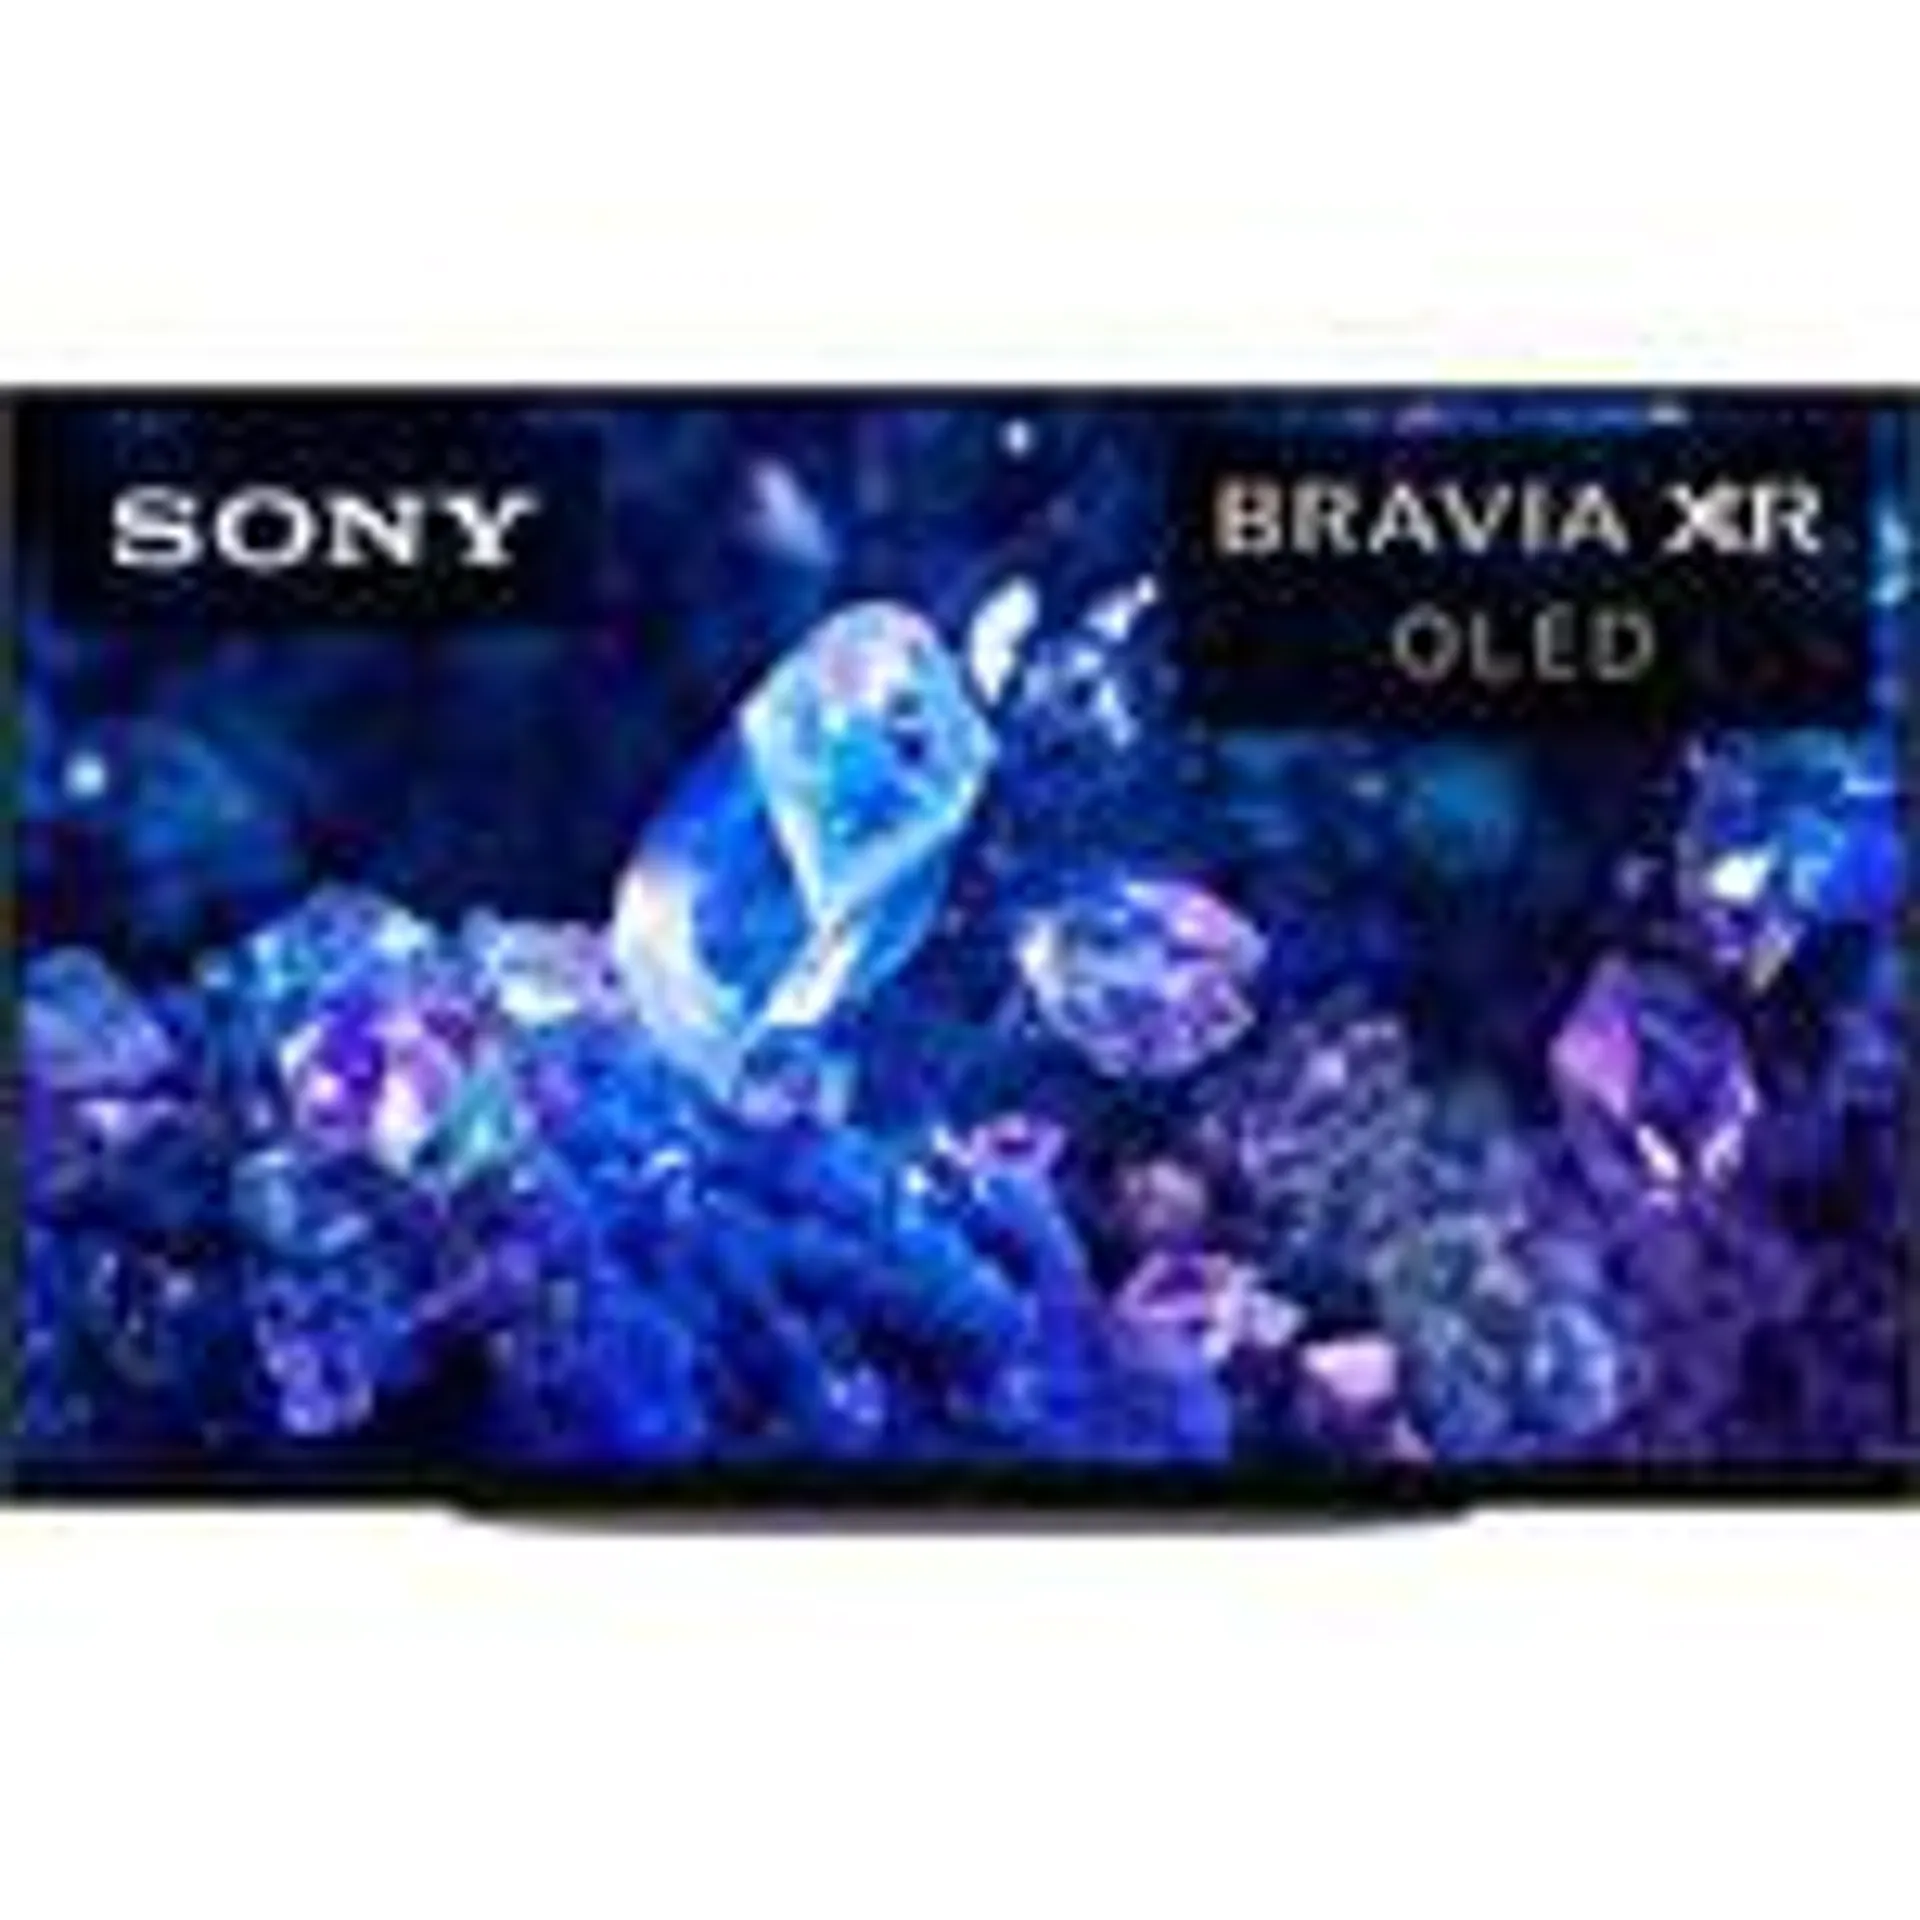 Sony BRAVIA XR A90K 42" HDR 4K UHD OLED TV